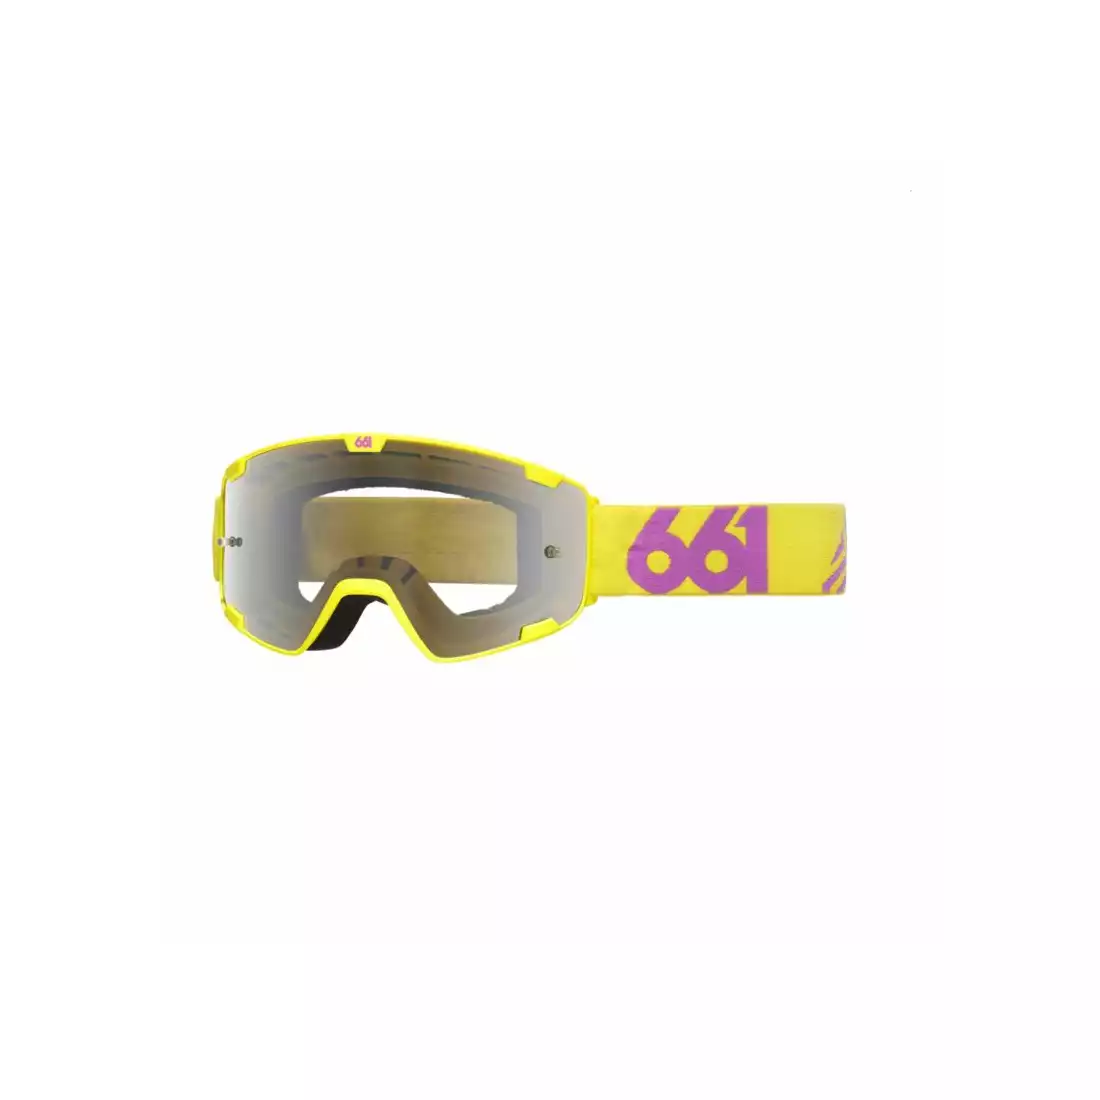 661 RADIA dazzle ochelari de protecție pentru bicicletă, galben-violet